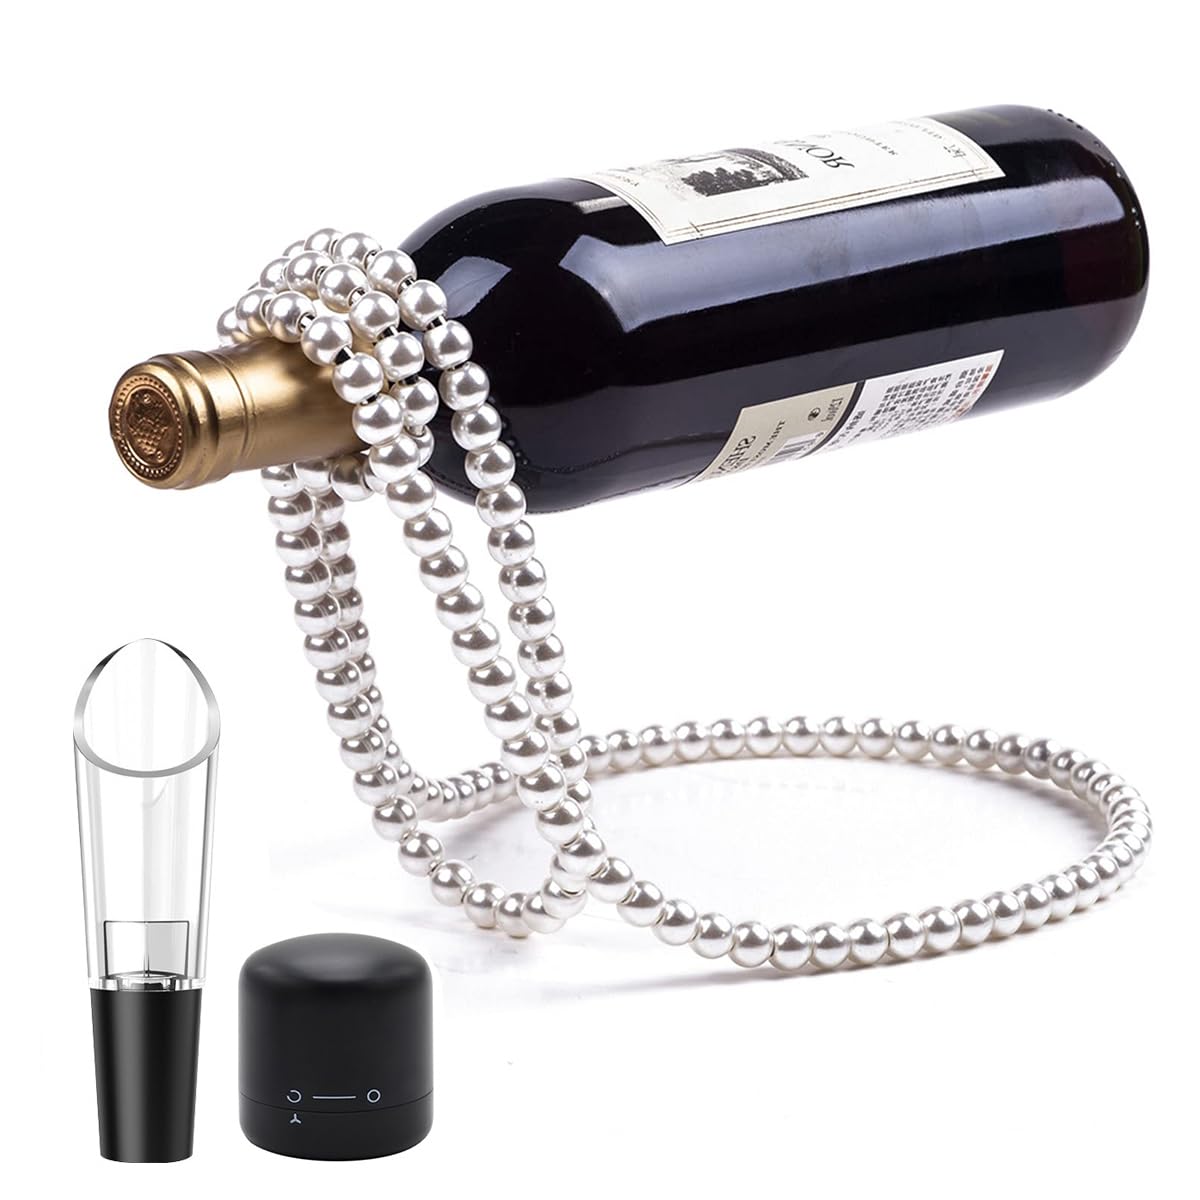 BEJARM Metal Wine Bottle Holder